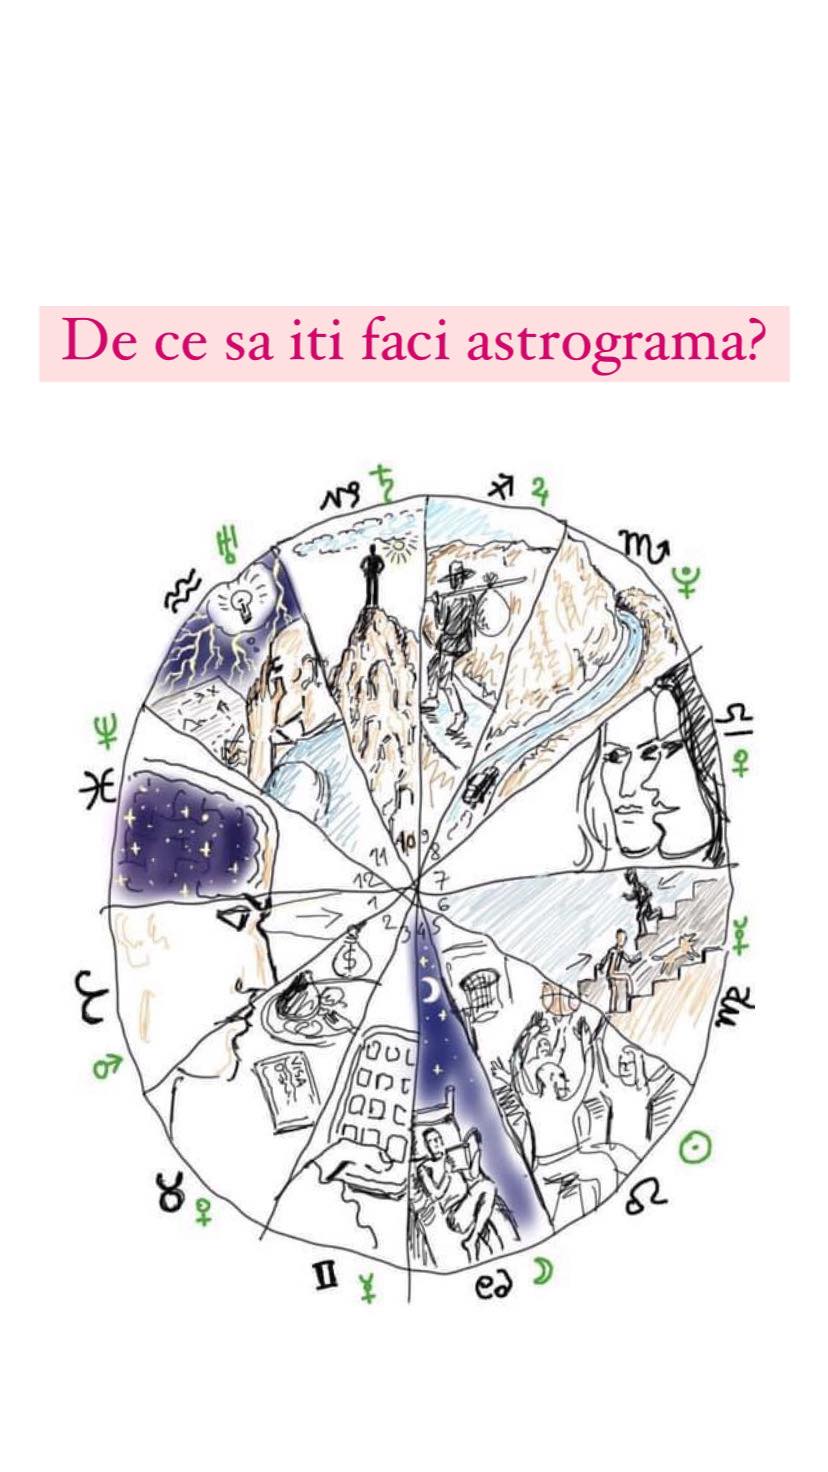 De ce sa iti faci astrograma?